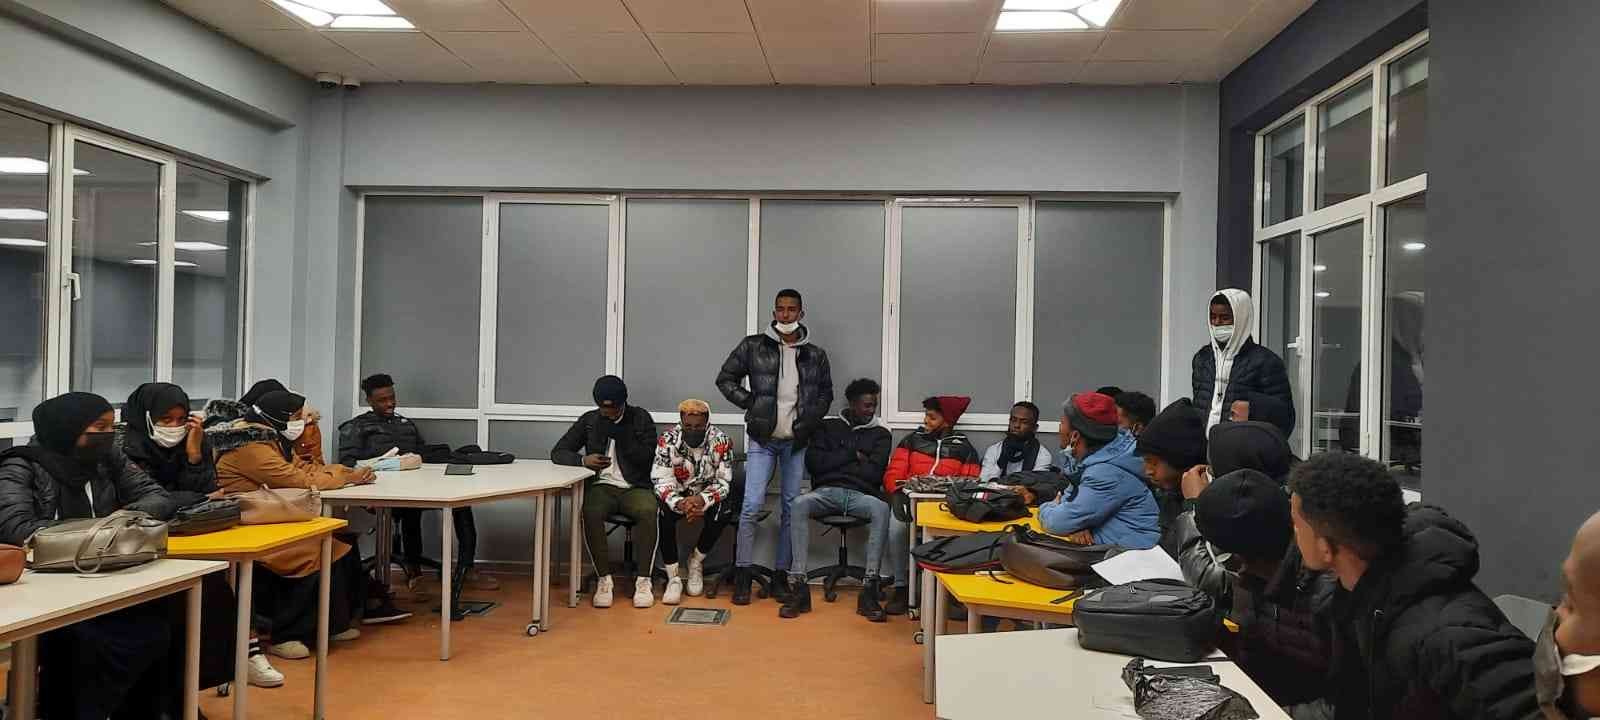 Somalili öğrencilerin temsilcileri seçildi #duzce